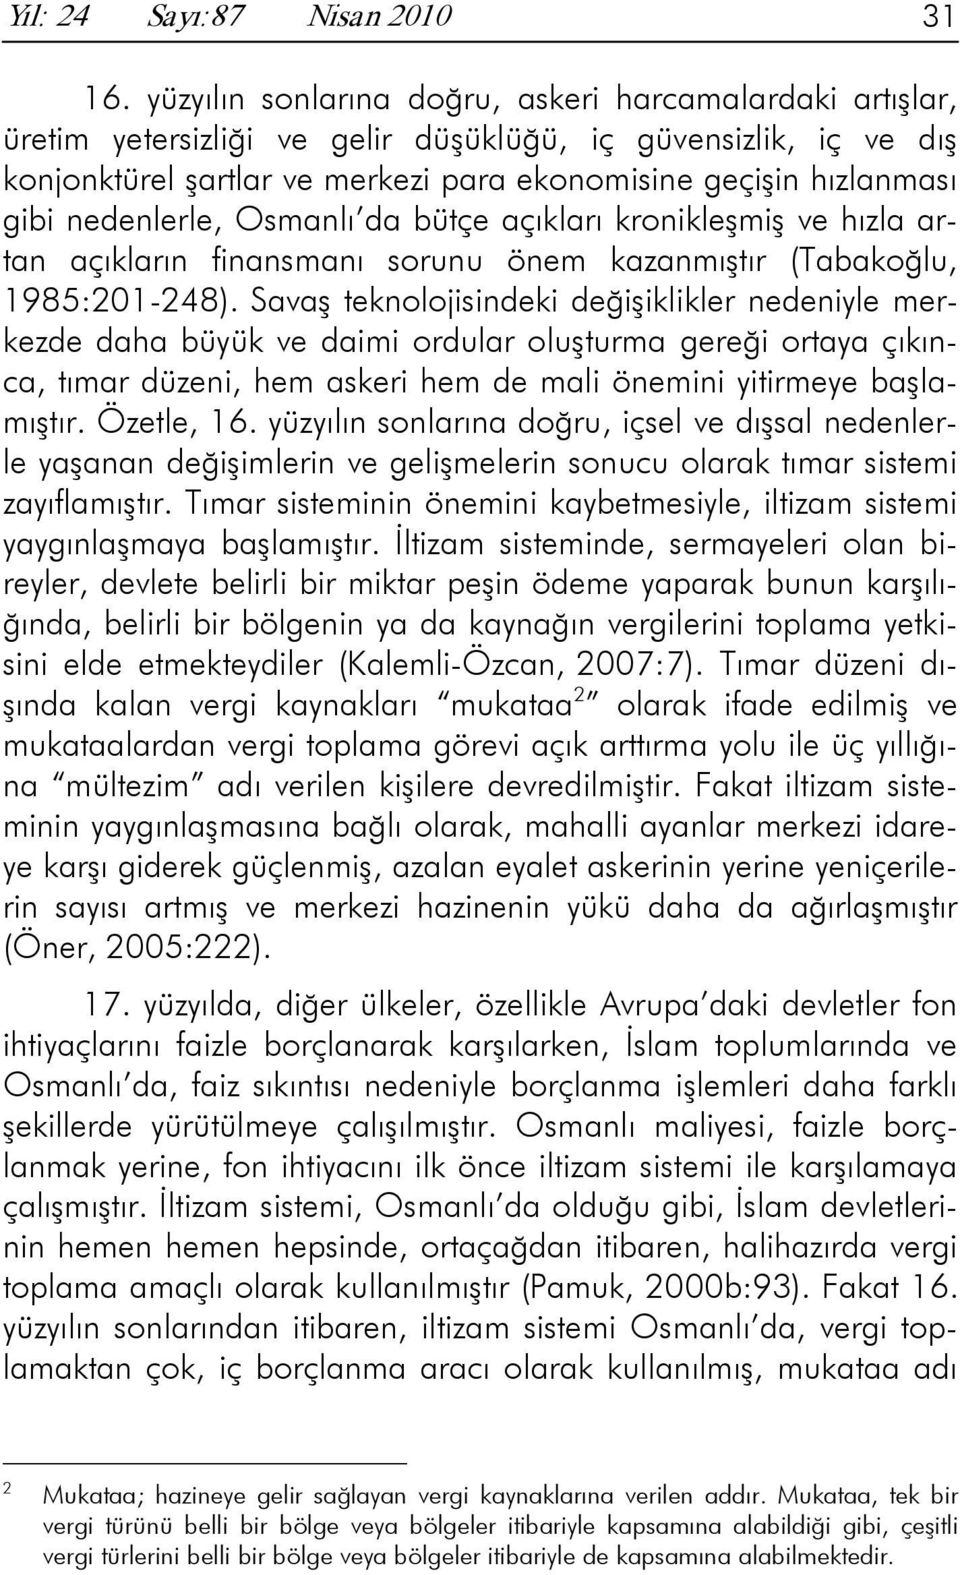 nedenlerle, Osmanlı da bütçe açıkları kronikleşmiş ve hızla artan açıkların finansmanı sorunu önem kazanmıştır (Tabakoğlu, 1985:201-248).